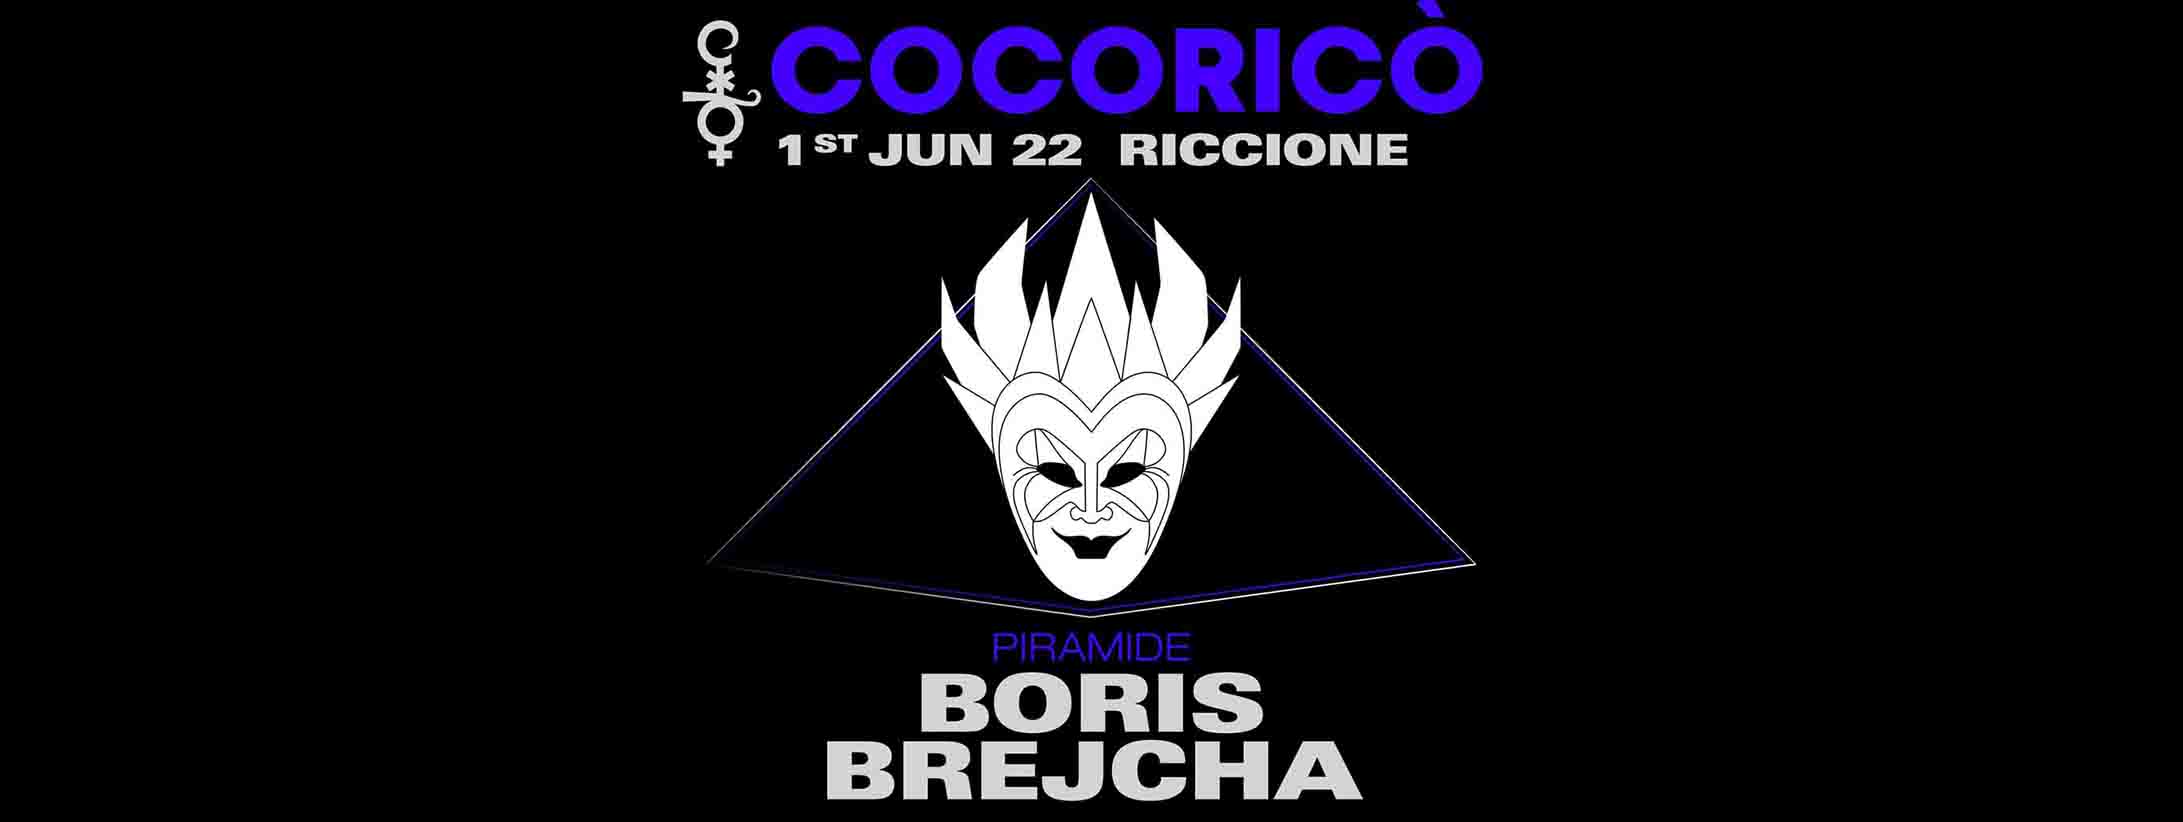 boris-brejcha-cocorico-01-06-2022